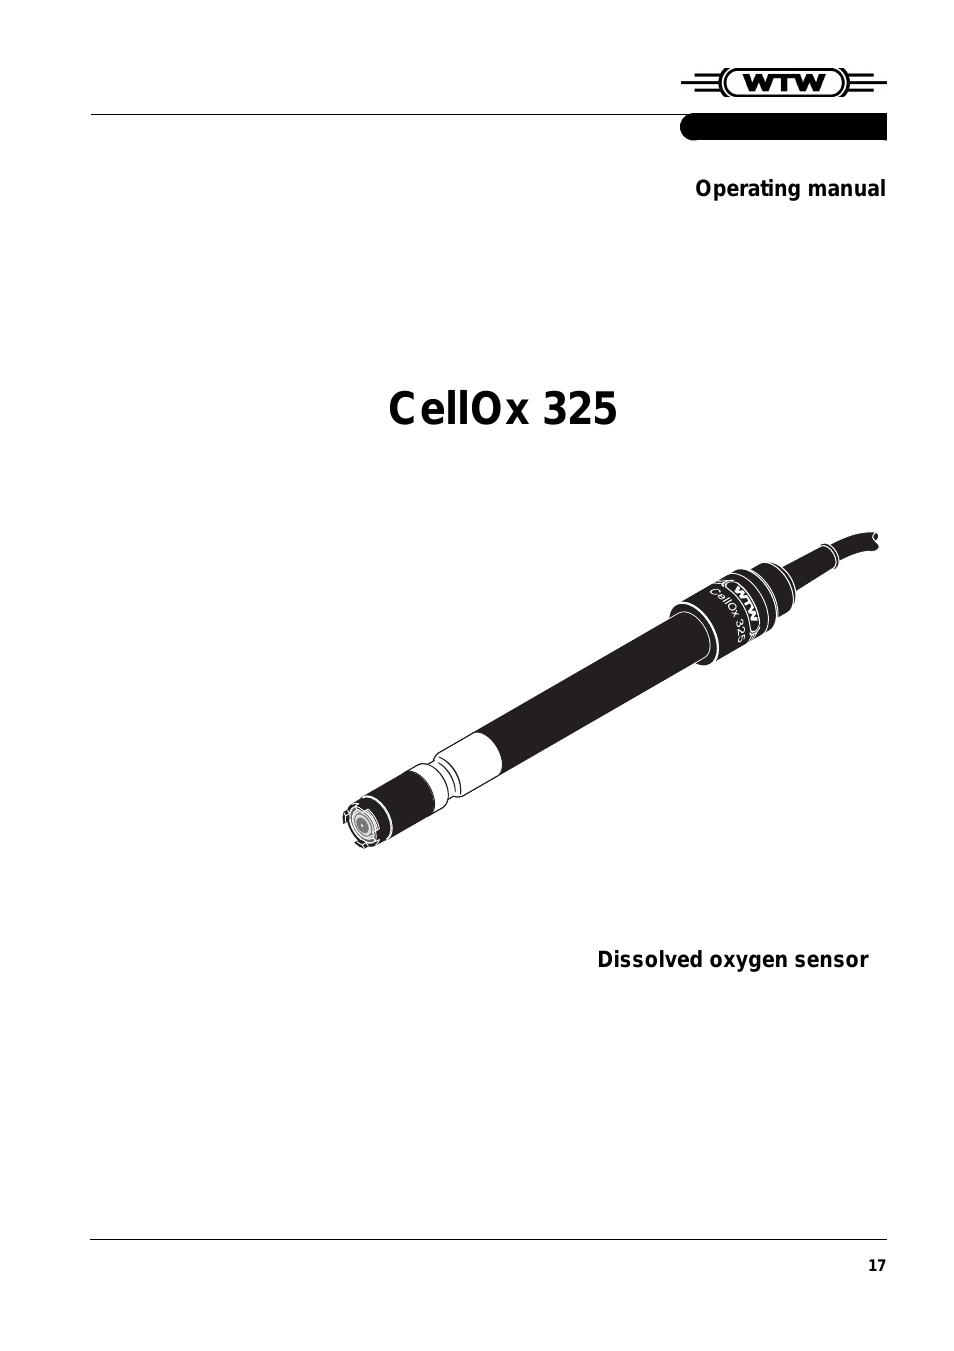 CellOx 325 DO ELECTRODES